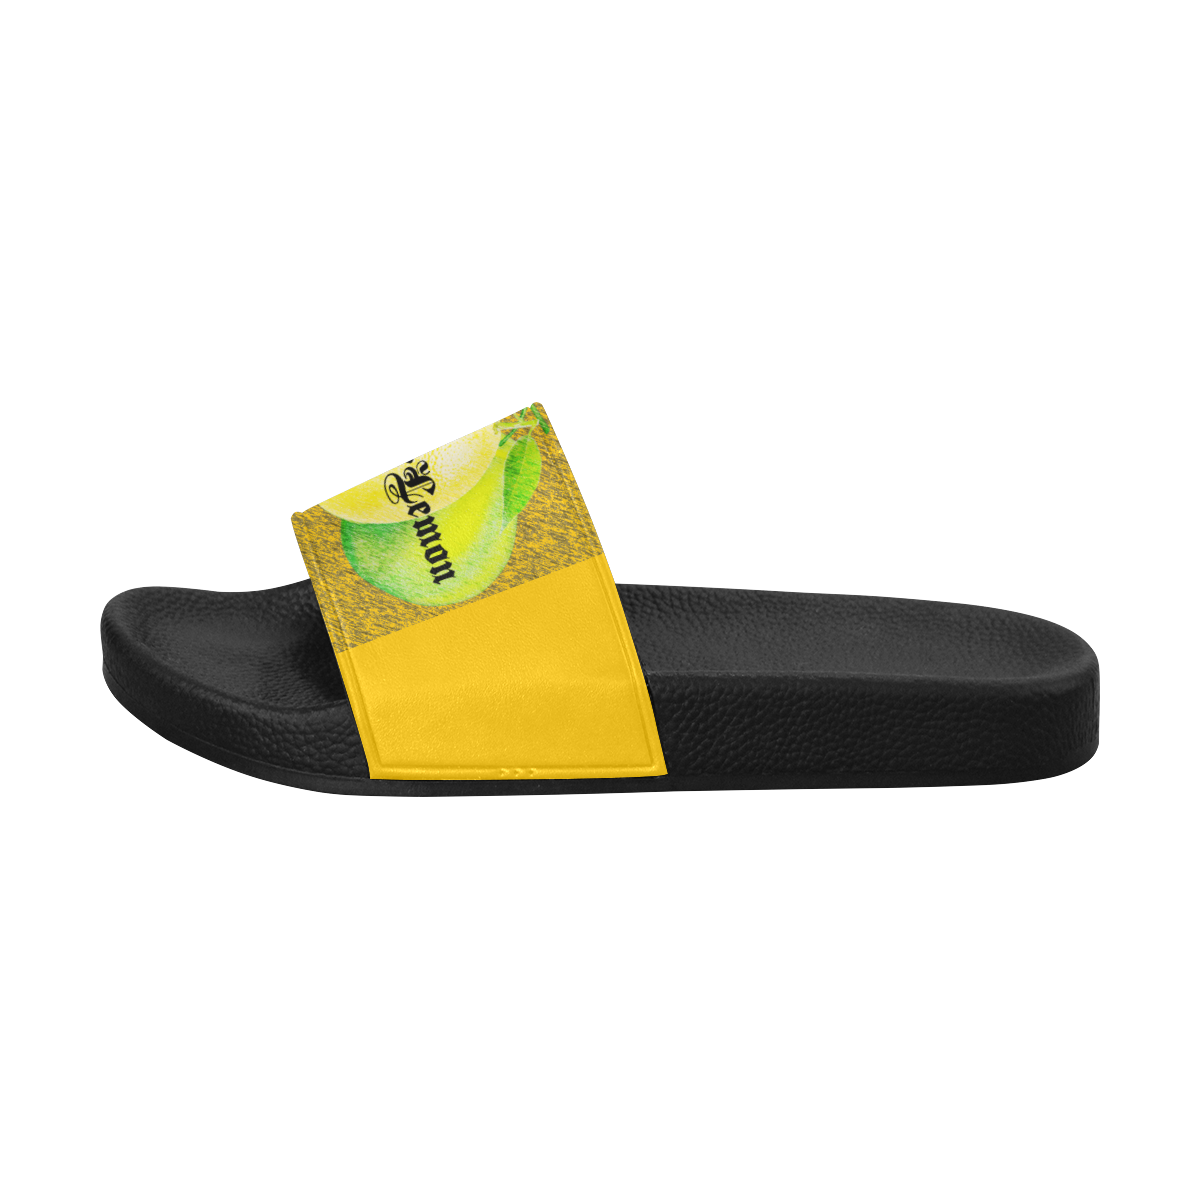 PearLemon SandalWoman2 Women's Slide Sandals (Model 057)